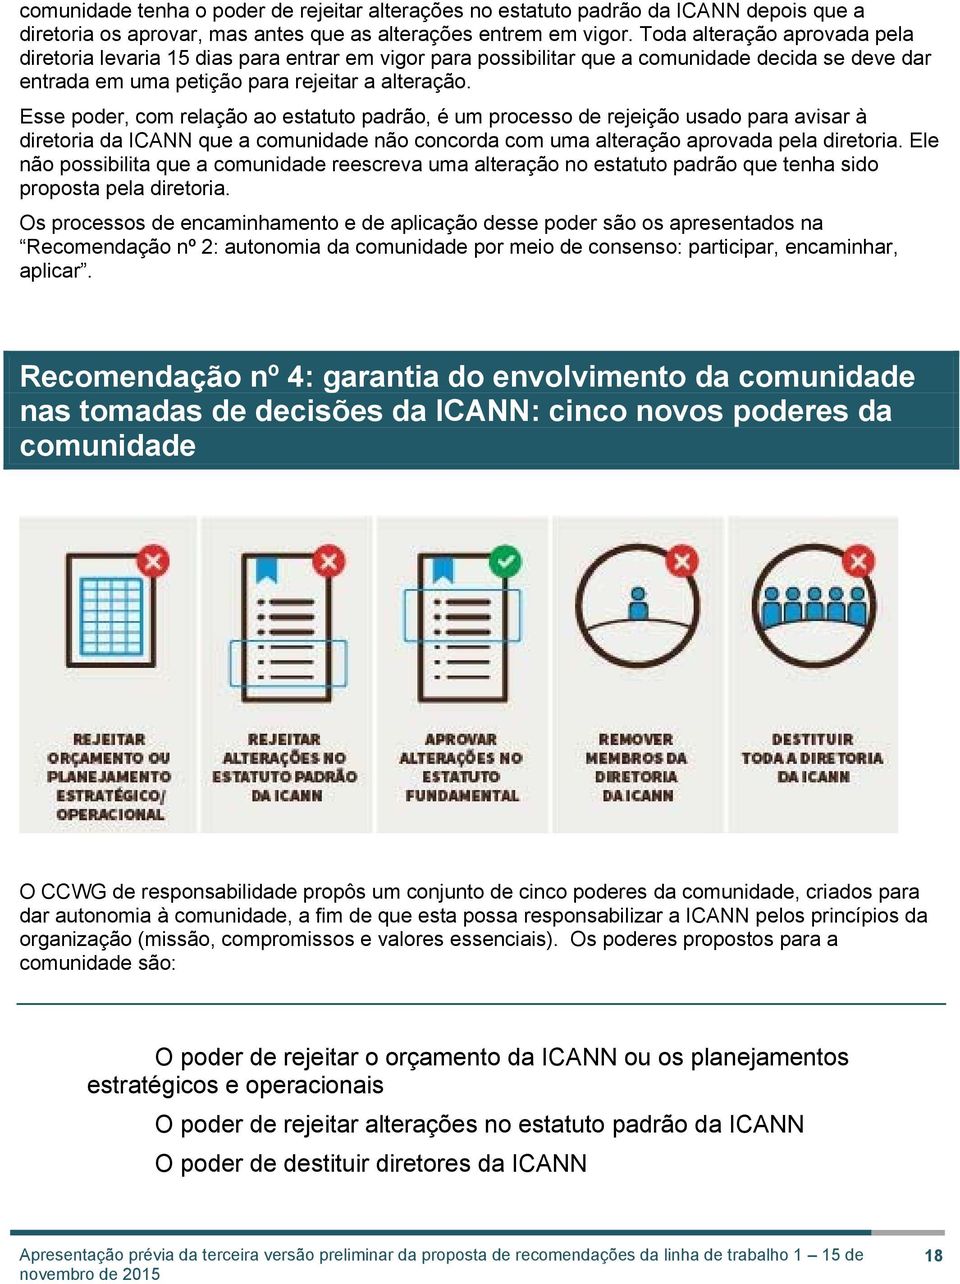 Esse poder, com relação ao estatuto padrão, é um processo de rejeição usado para avisar à diretoria da ICANN que a comunidade não concorda com uma alteração aprovada pela diretoria.